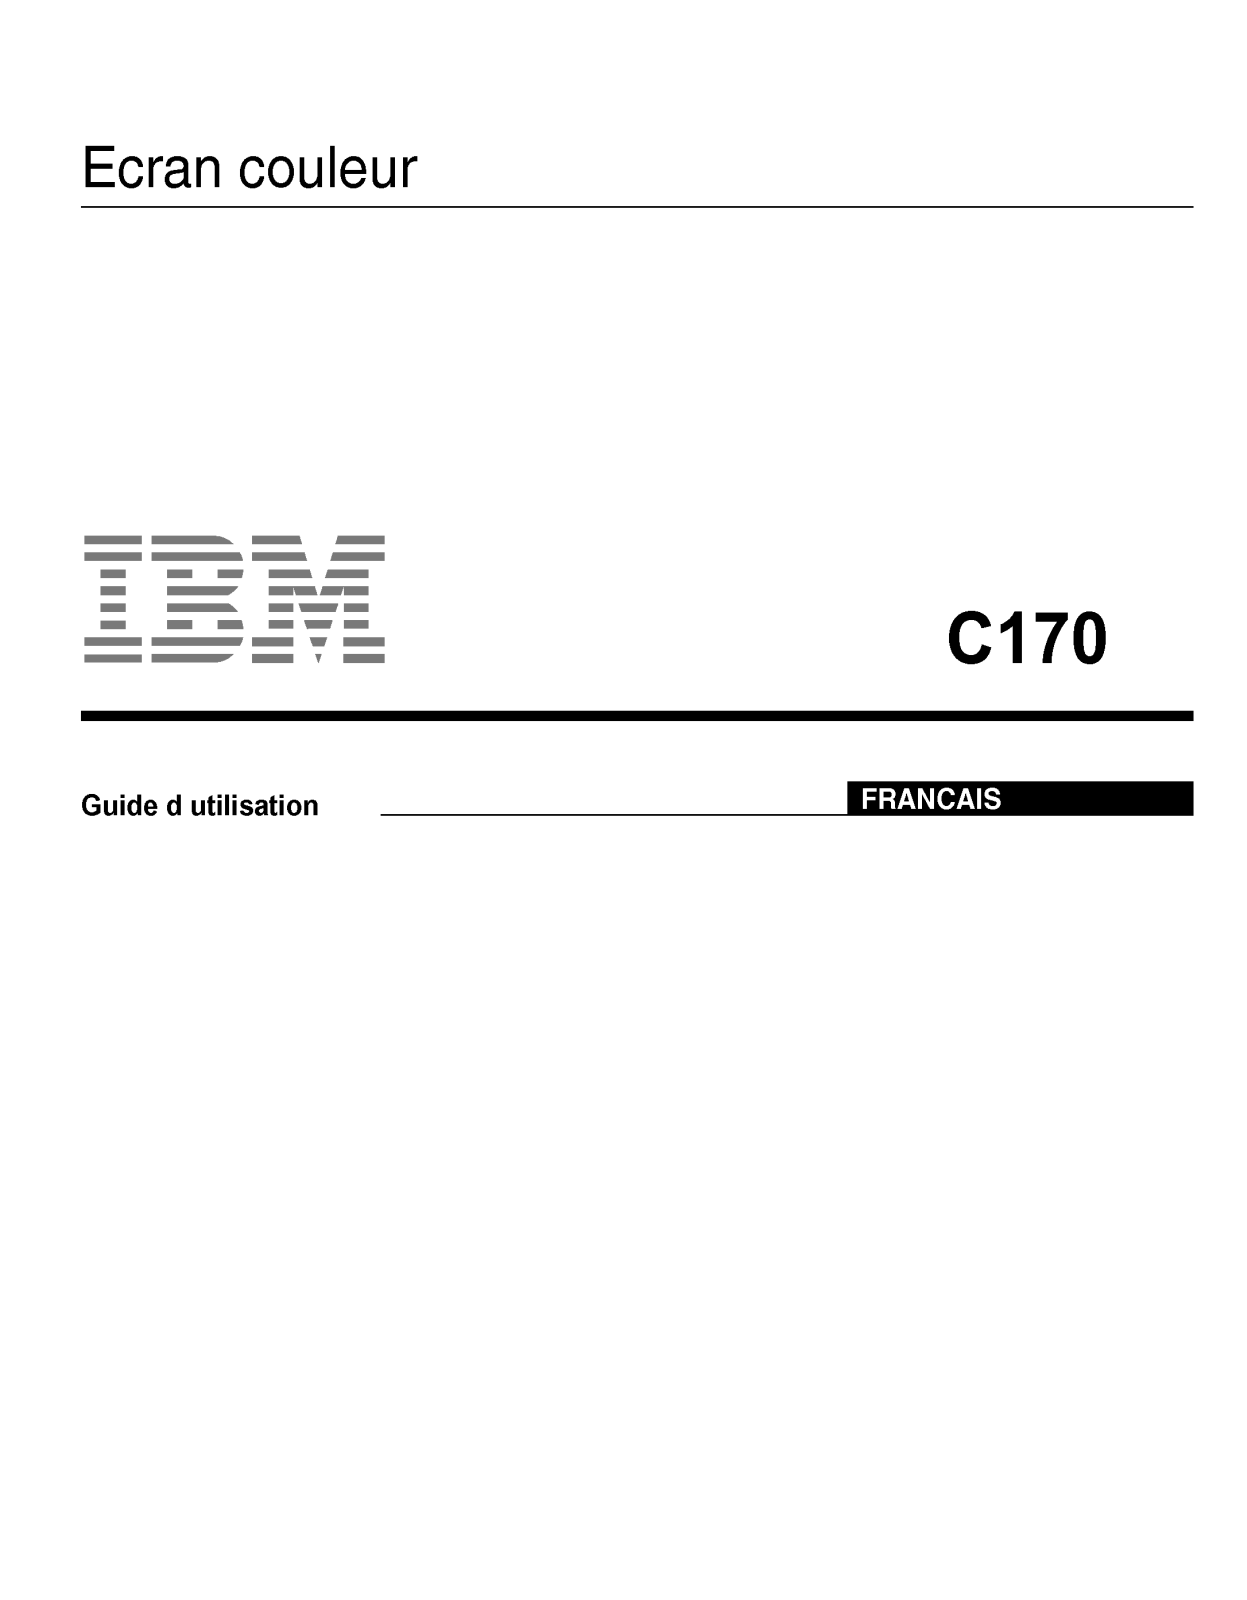 LG C170 User Manual